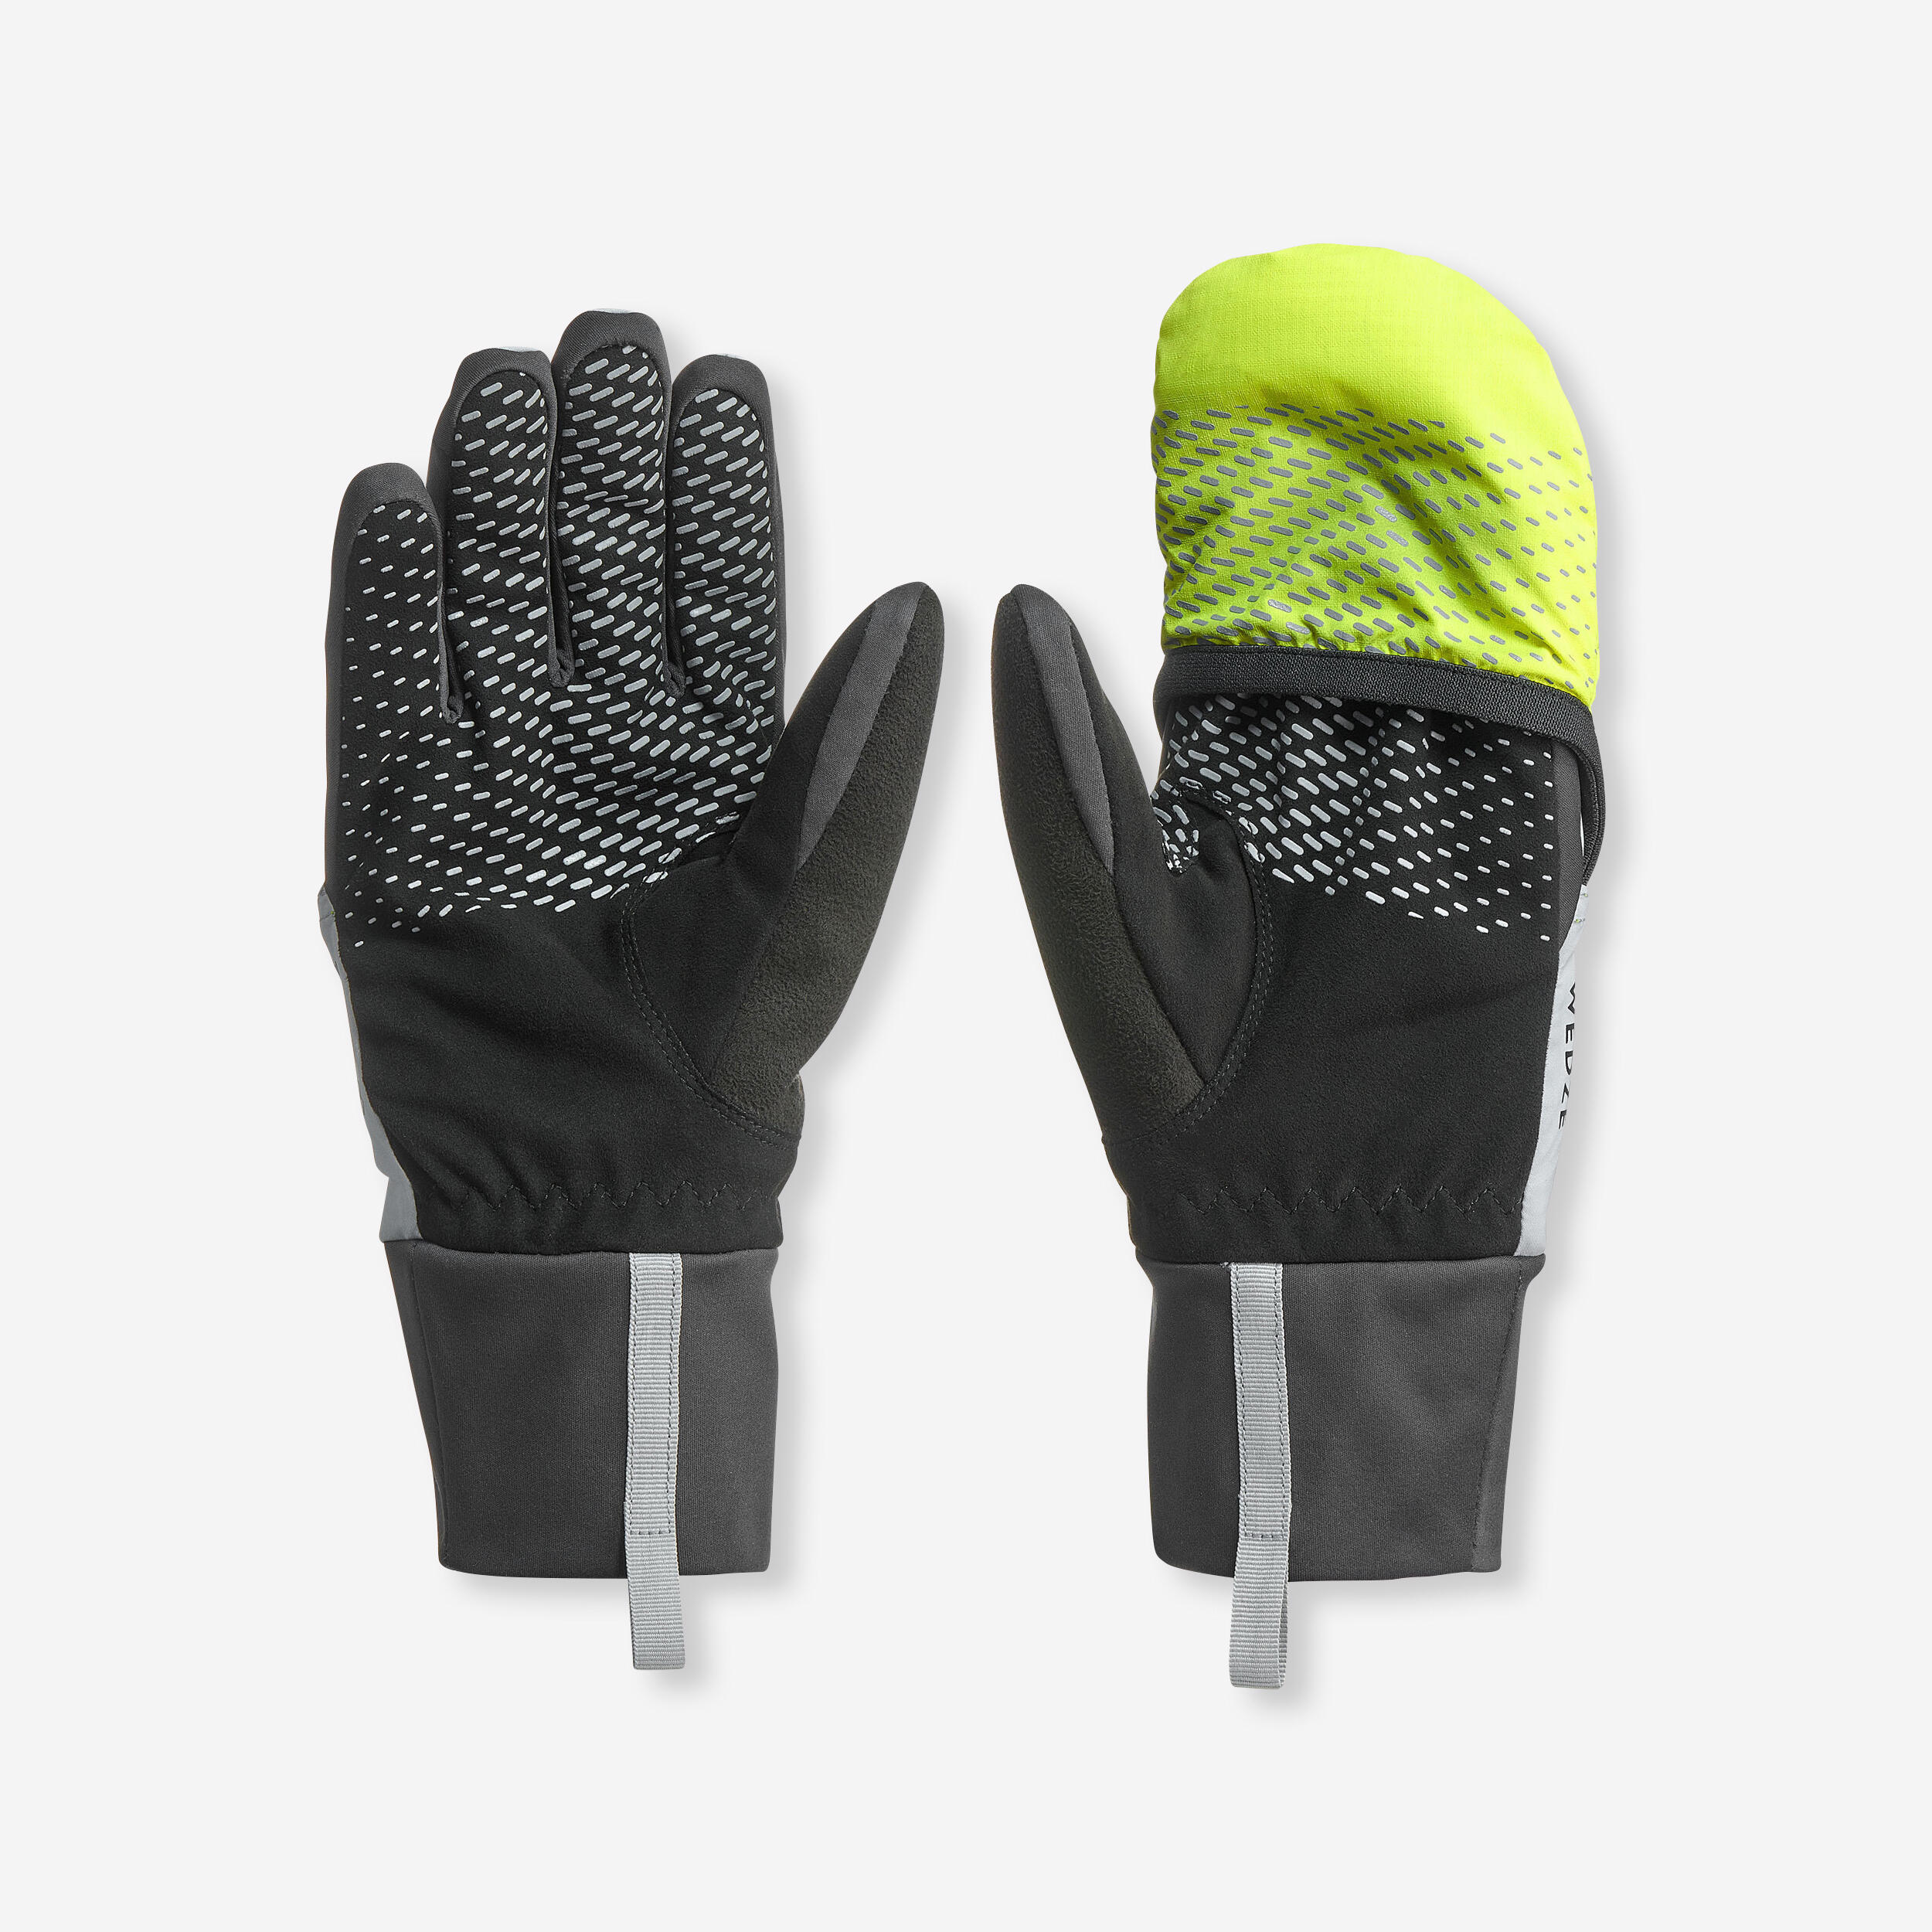 gants / moufle de ski de randonnée imperméables - 2 en 1 - gris jaune - wedze